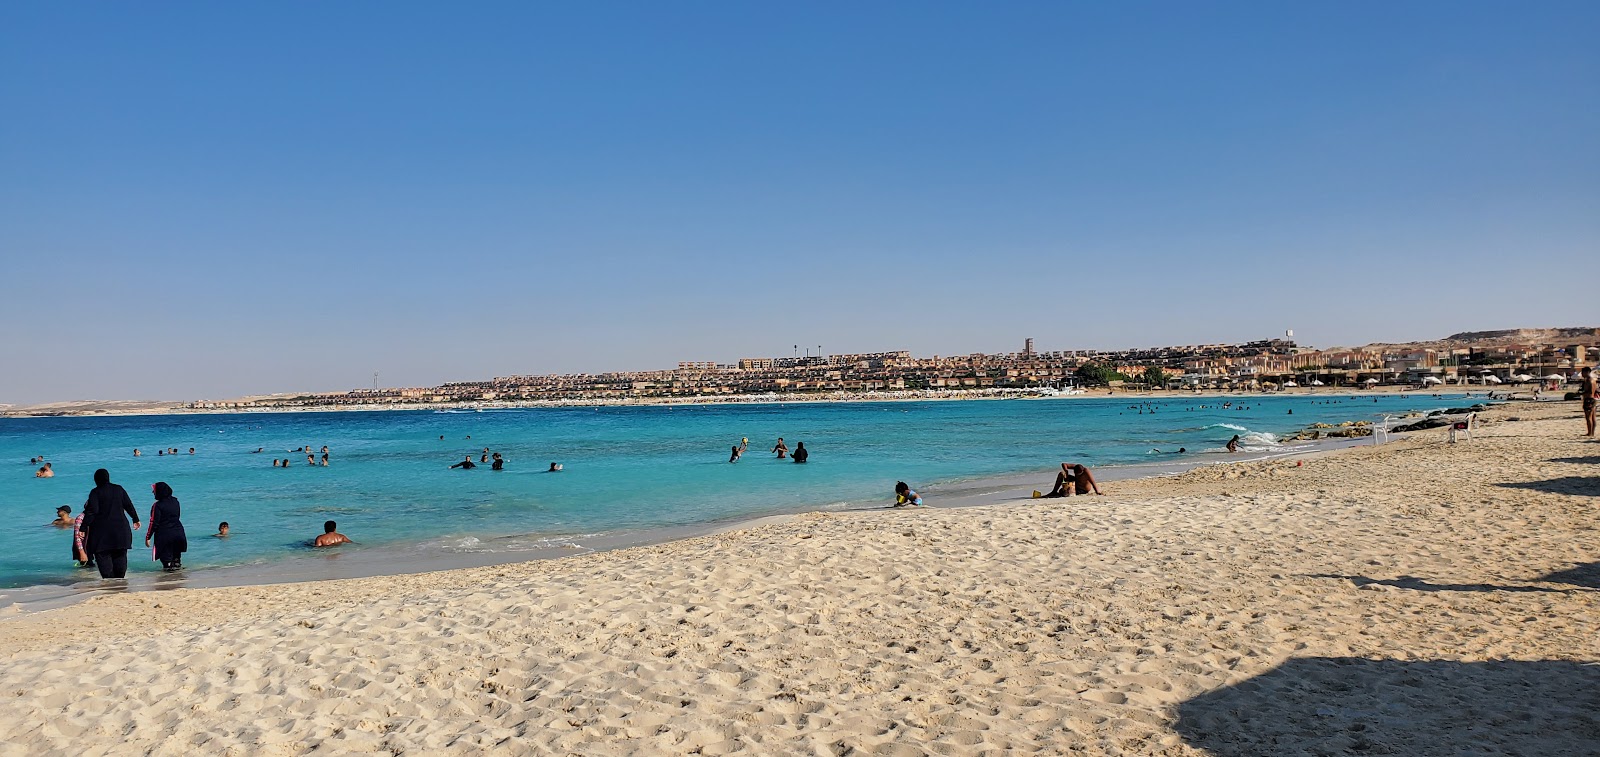 Fotografie cu Ghazala Beach II - locul popular printre cunoscătorii de relaxare